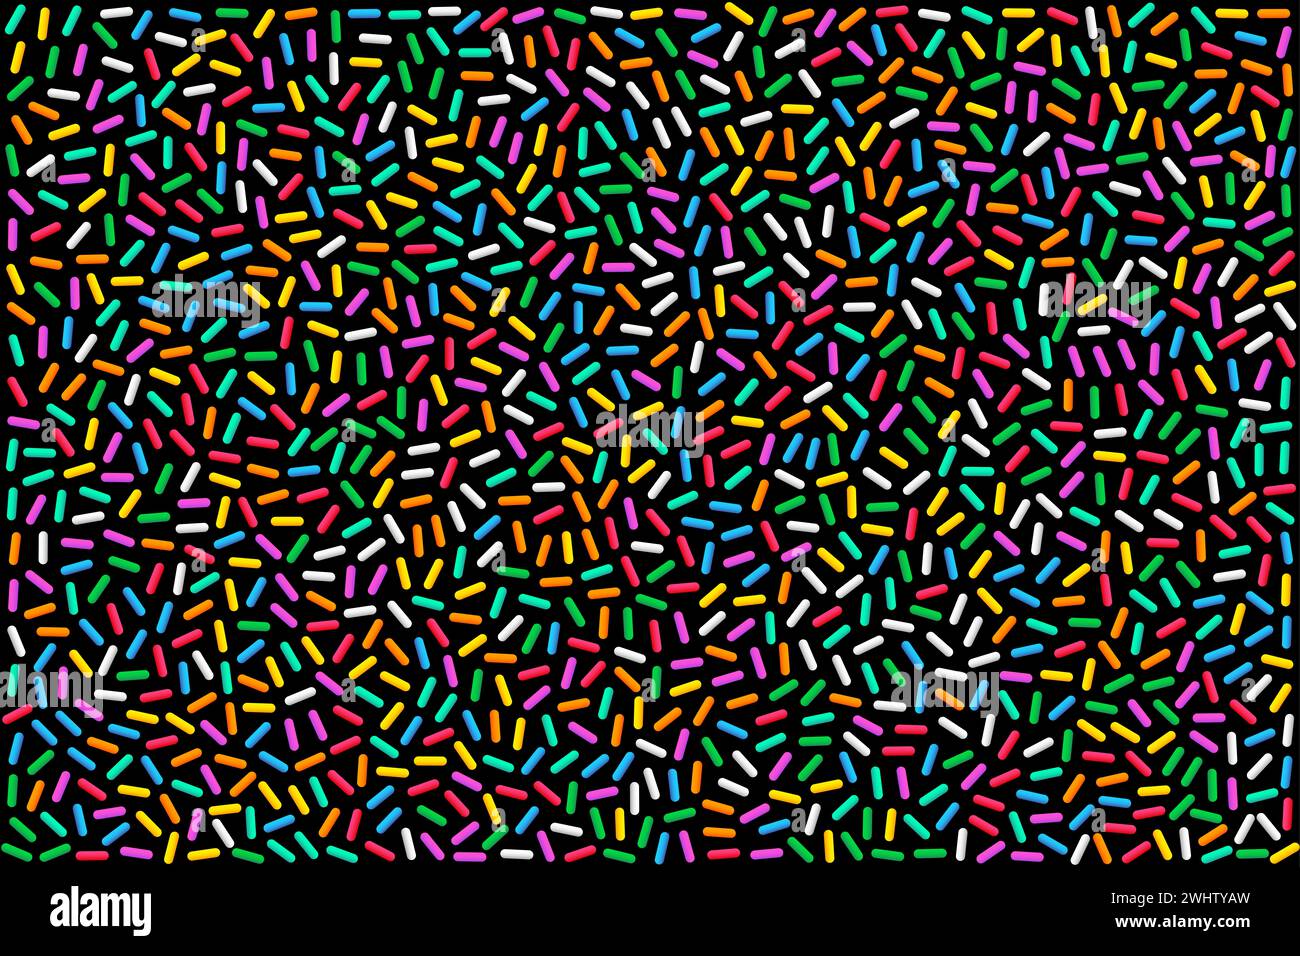 Spruzzi di arcobaleno colorati, illustrazione su sfondo nero. Zuccheri multicolori a forma di canna, minuscole caramelle in una varietà di colori diversi. Foto Stock